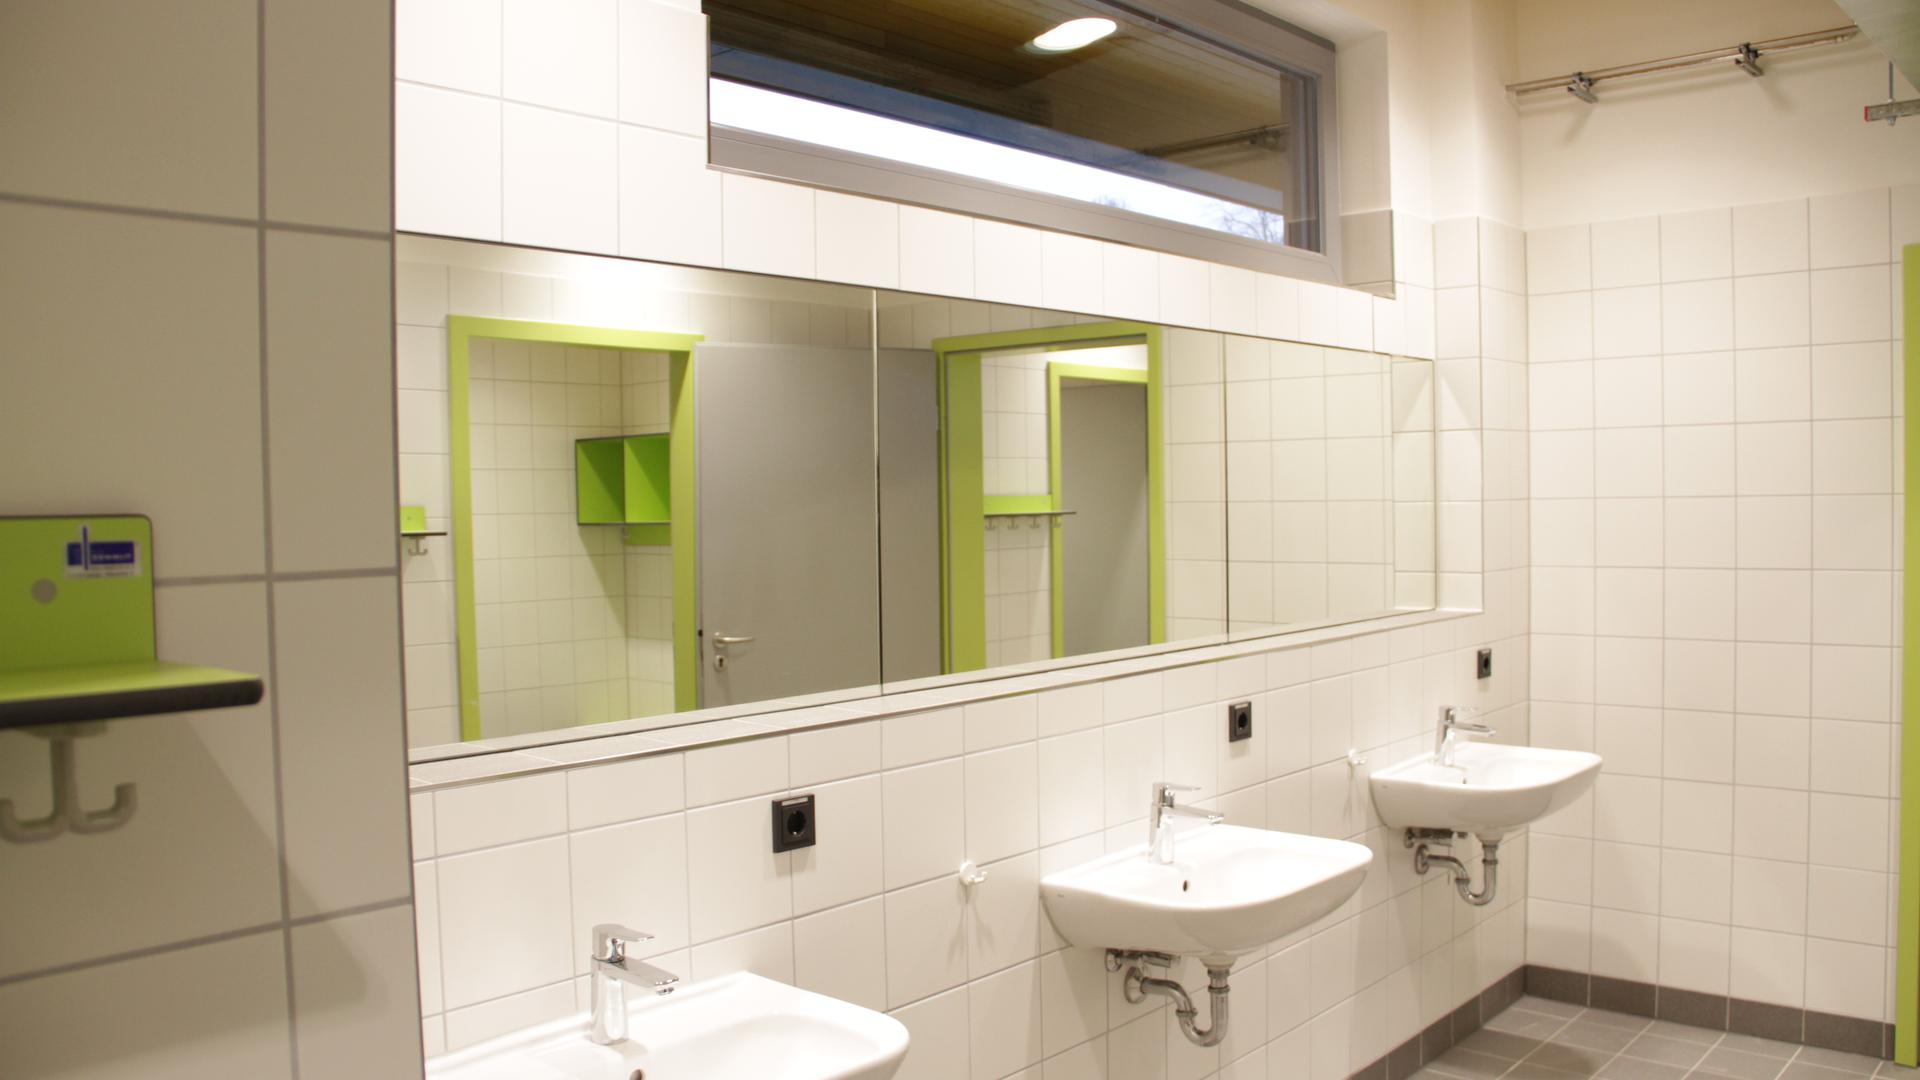 Sauber, modern und angenehm präsentiert sich das Innere des Sanitätshauses.